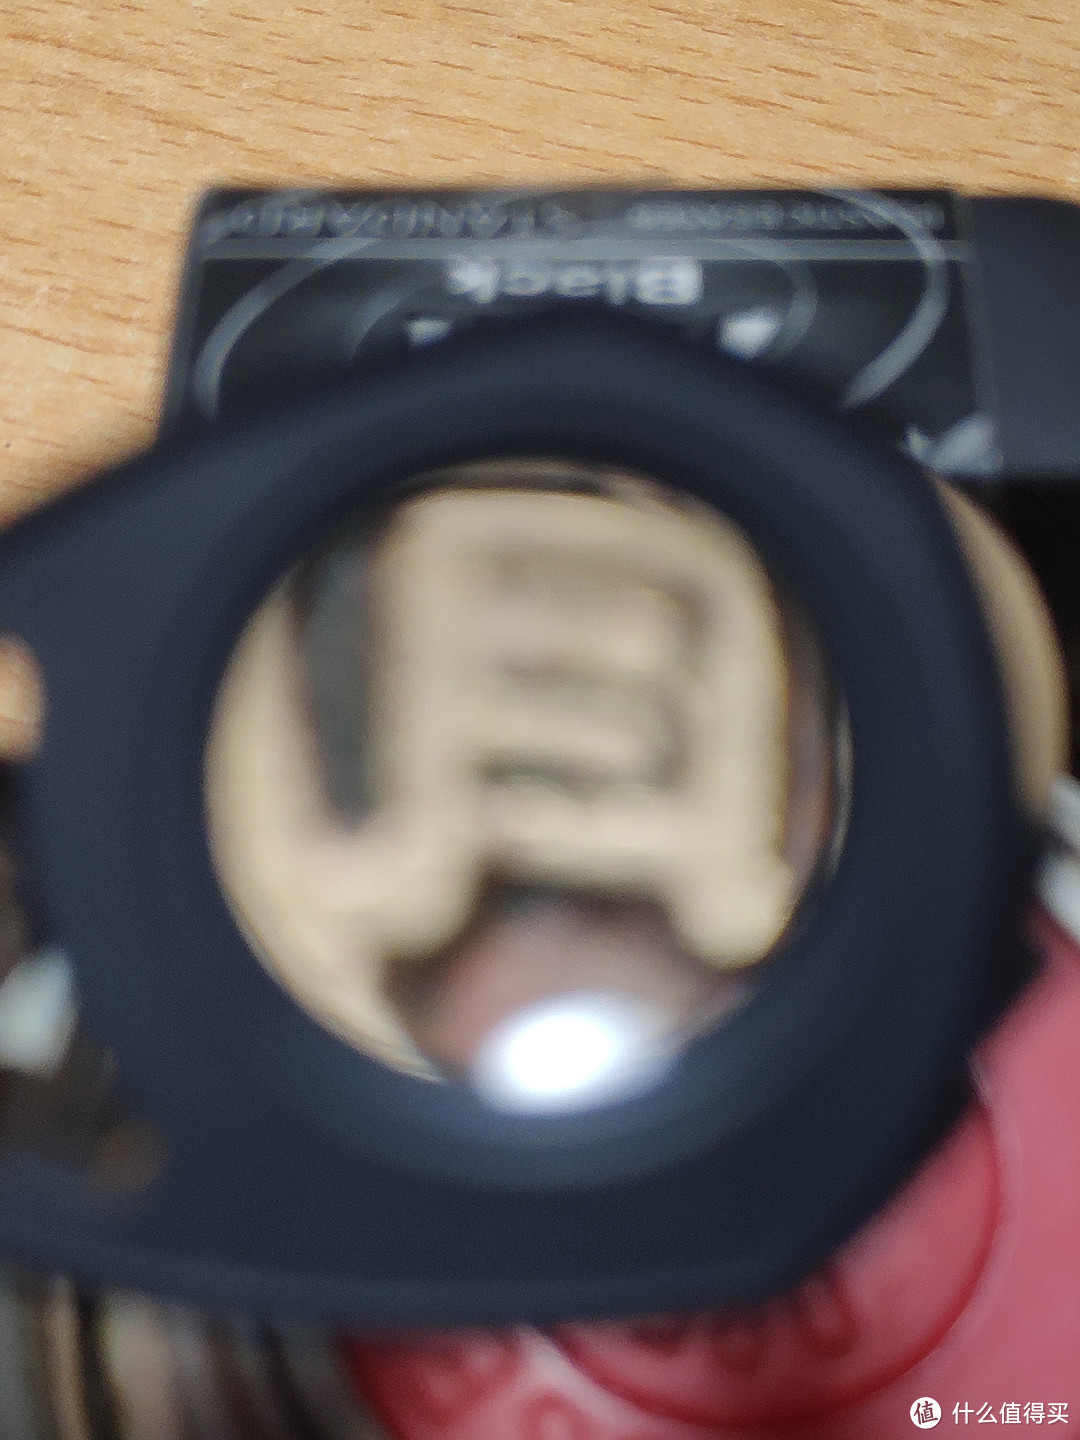 Nikon 10x 10倍放大镜与国产放大镜对比